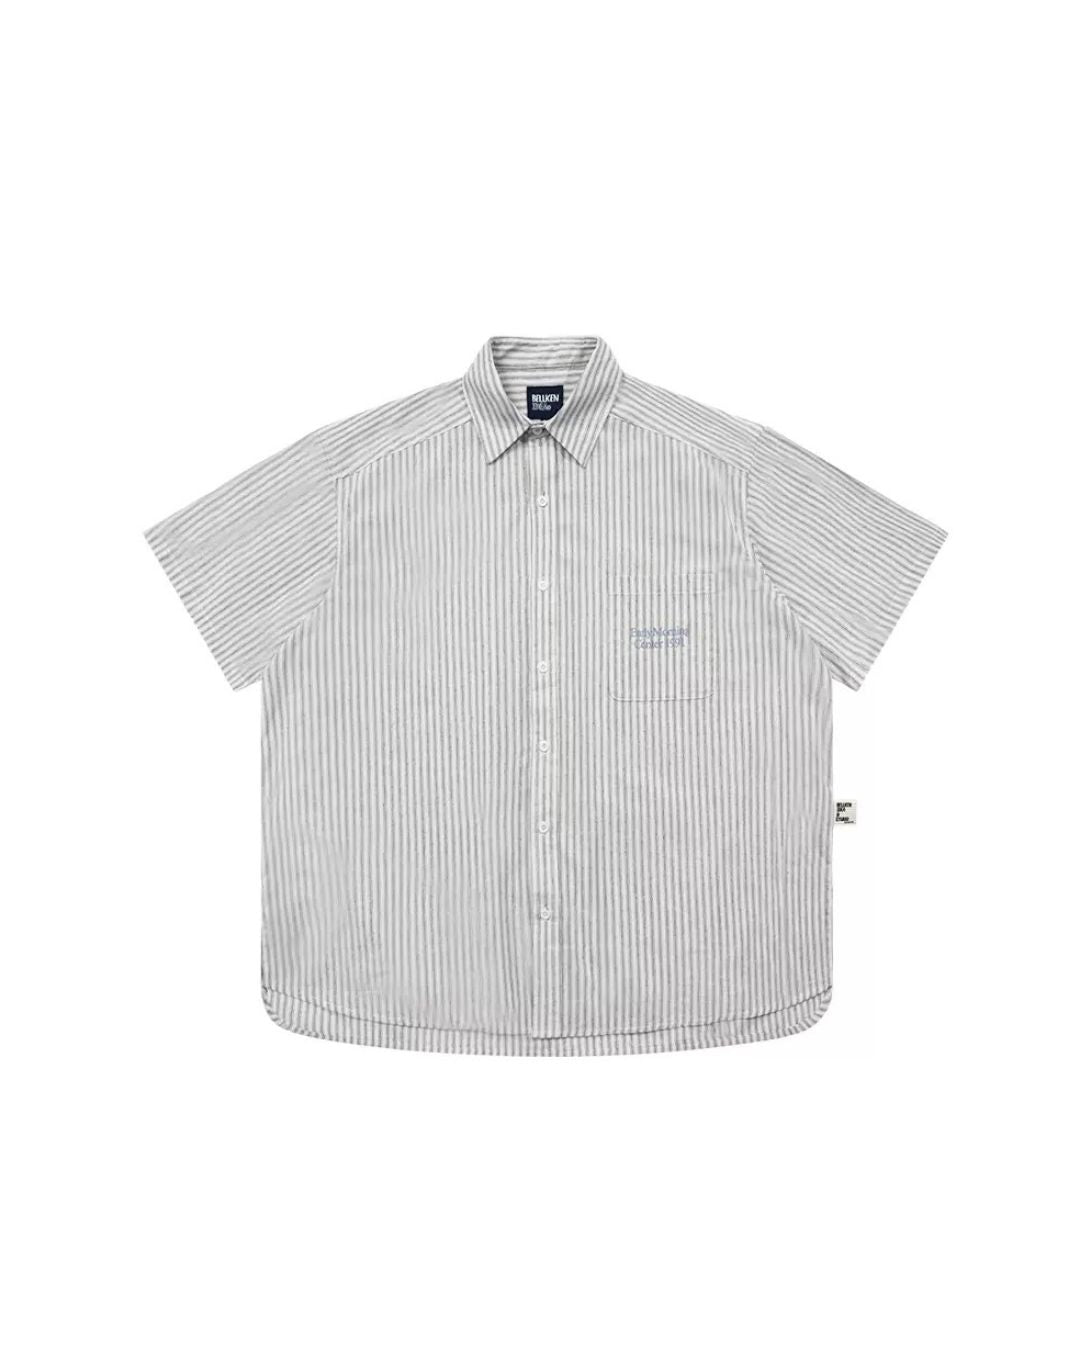 Retro Striped S/S Shirt　SS054